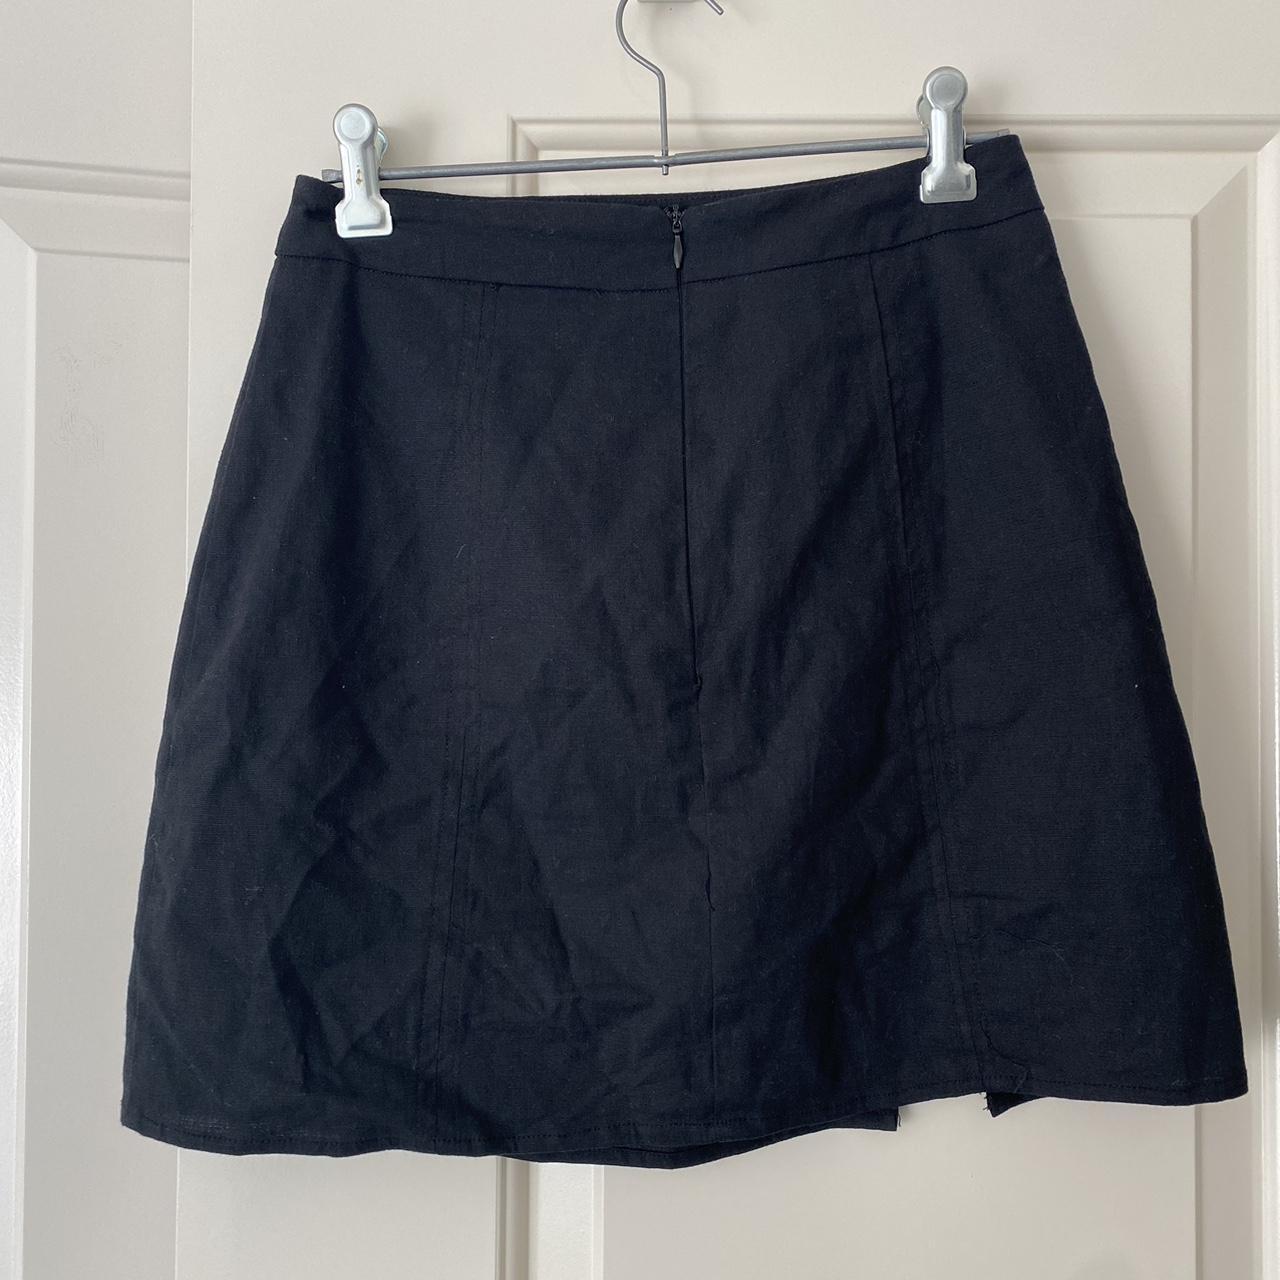 Perfect stranger Black linen mini skirt perfect... - Depop